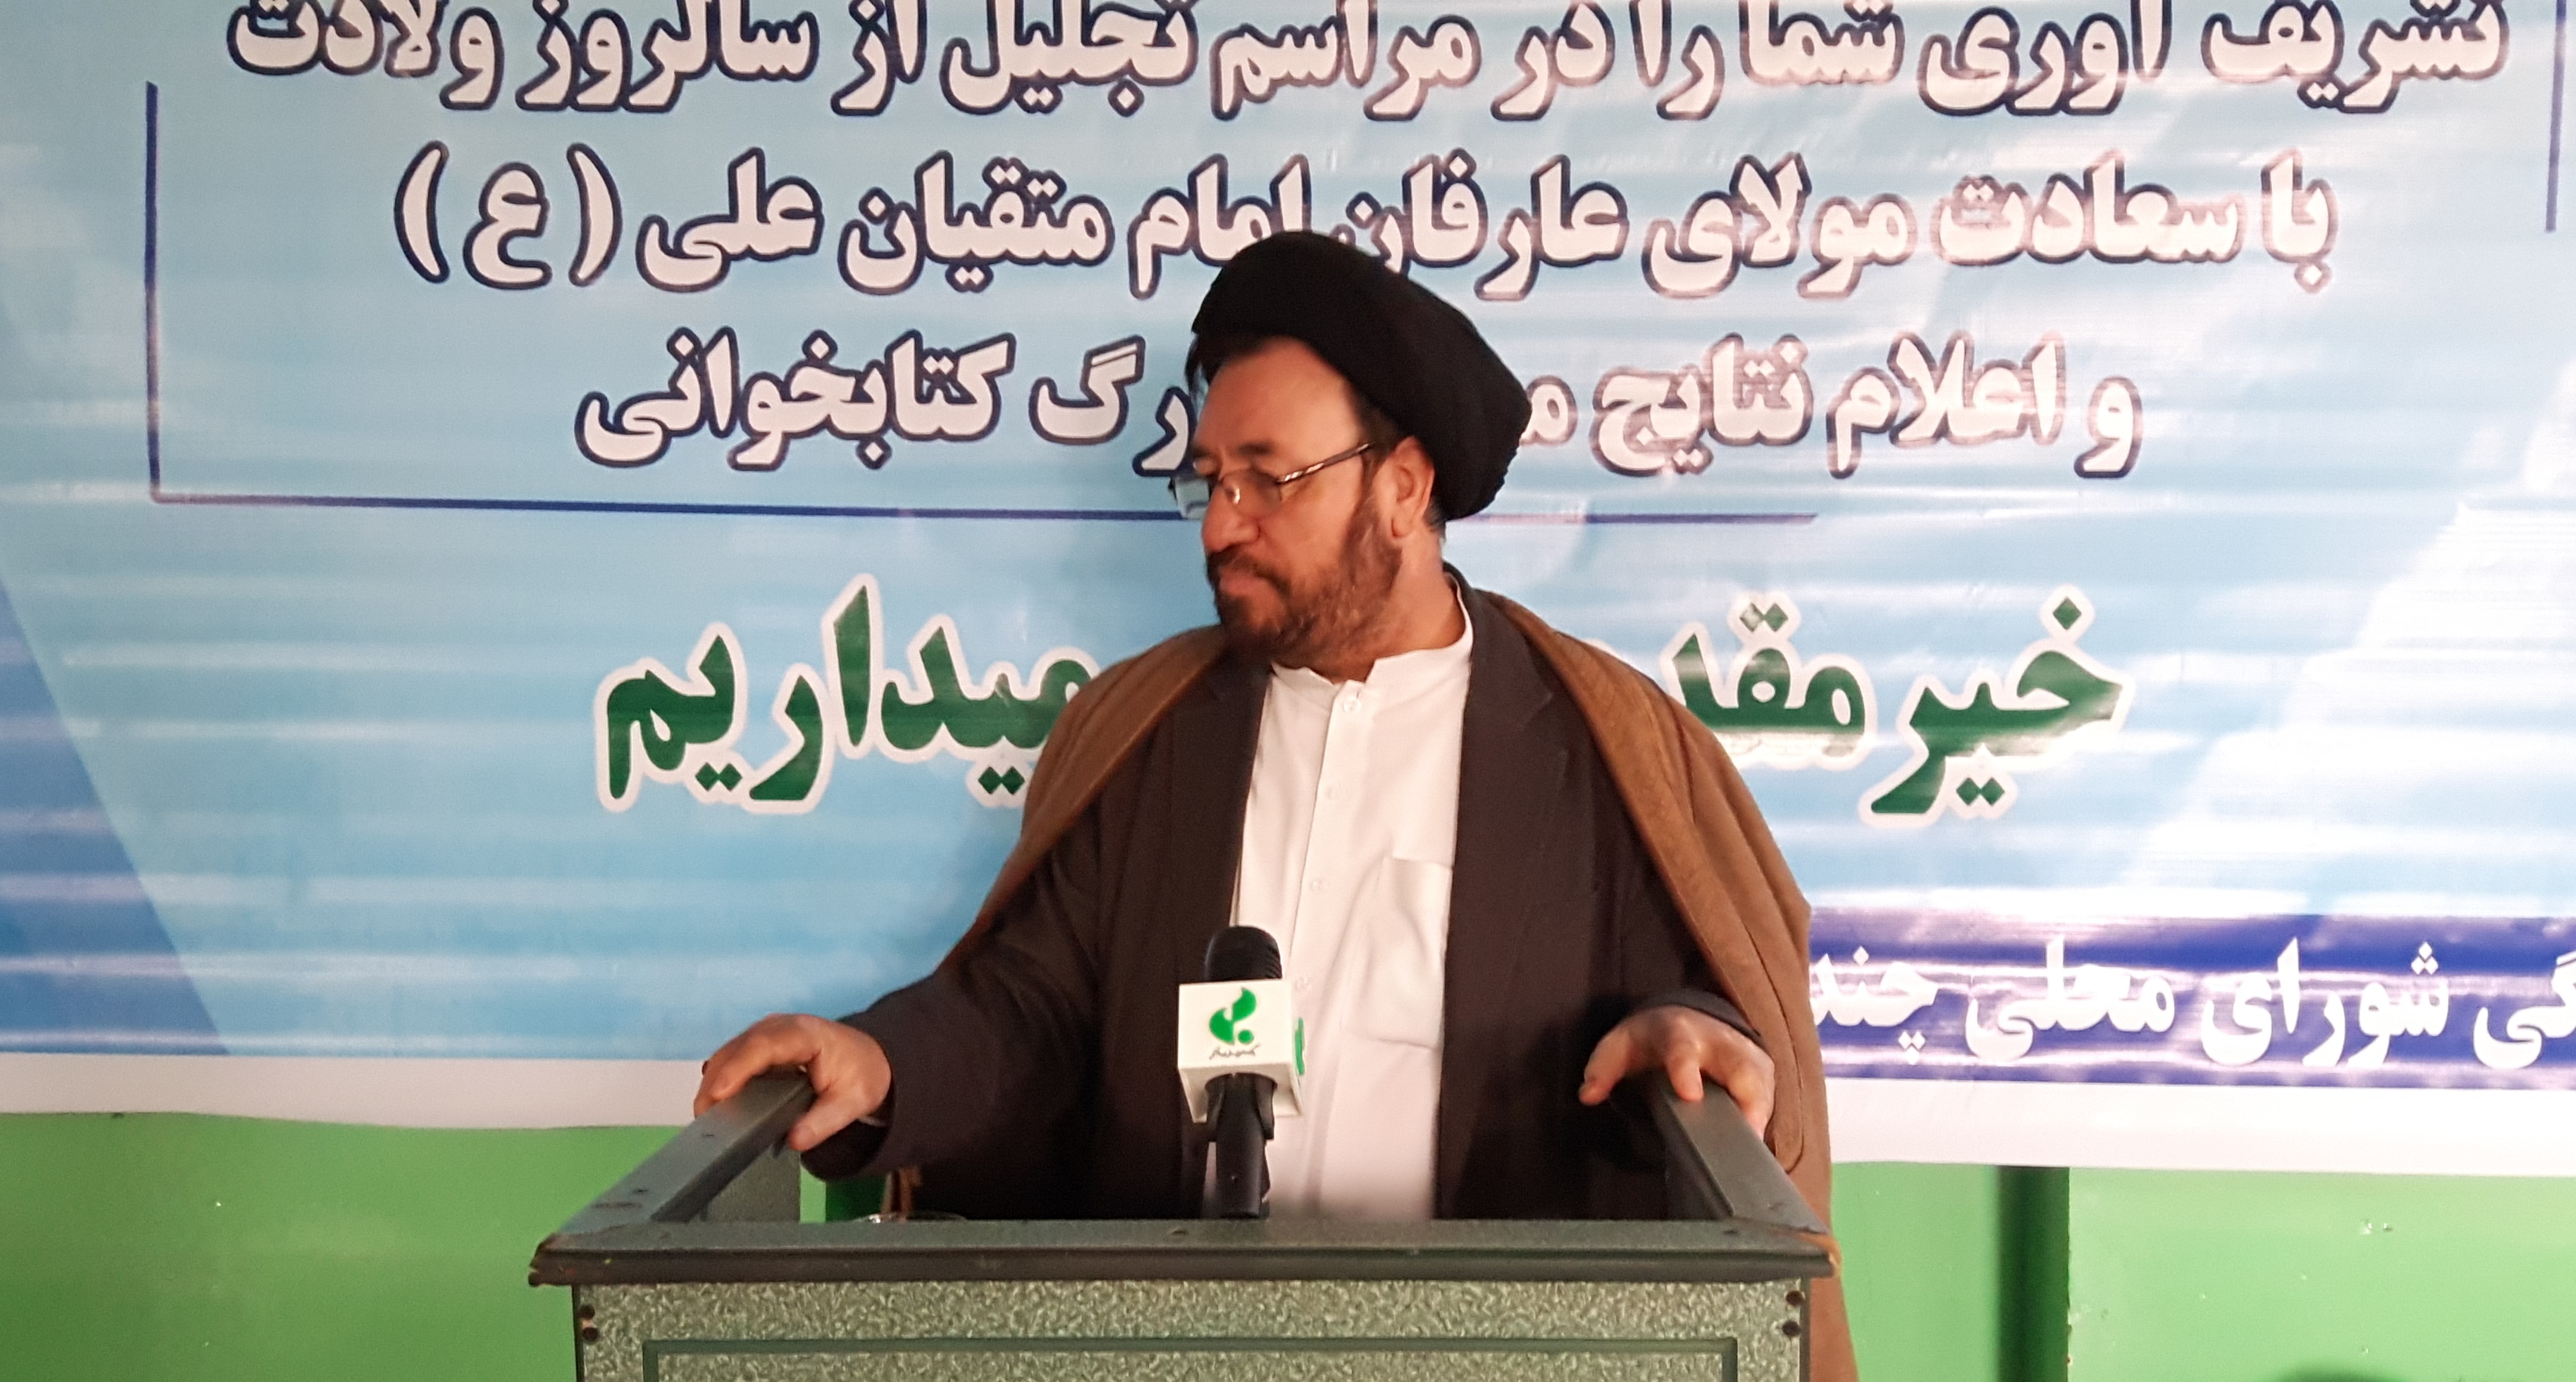 کتابخوانی بزرگ سیره و رفتارشناسی امام علی(ع) در کابل برگزار شد